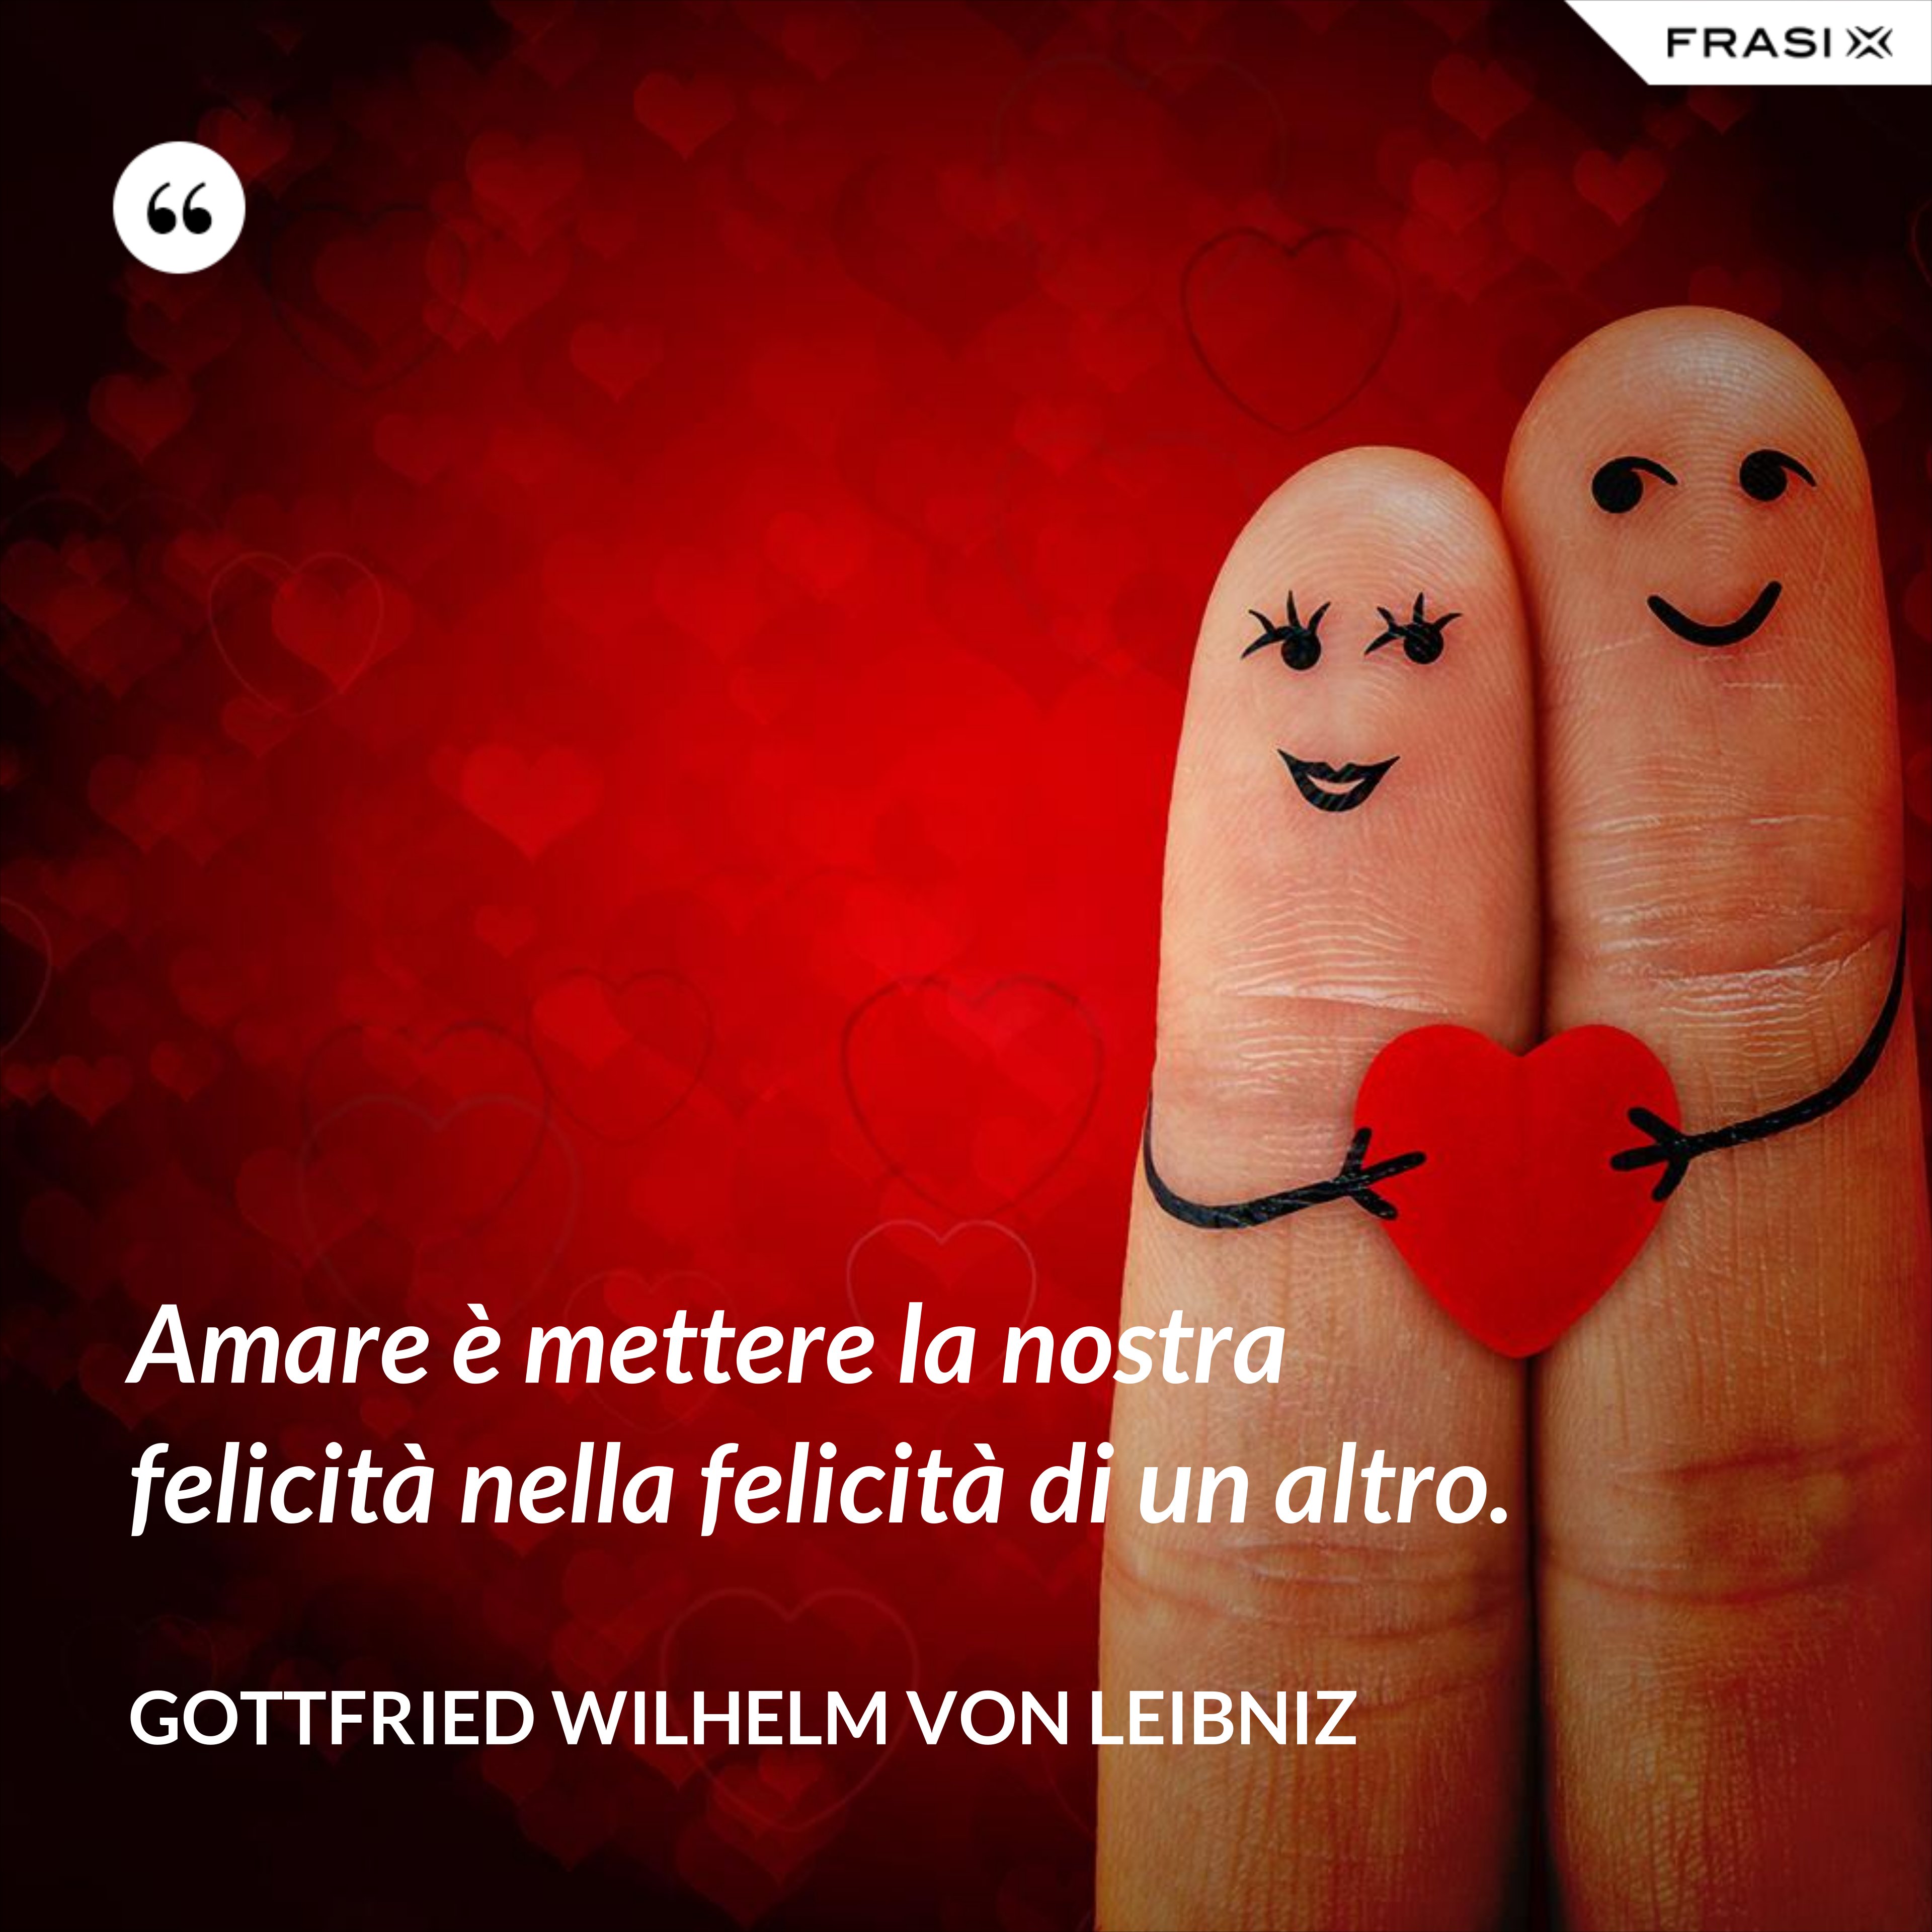 Amare è mettere la nostra felicità nella felicità di un altro. - Gottfried Wilhelm von Leibniz